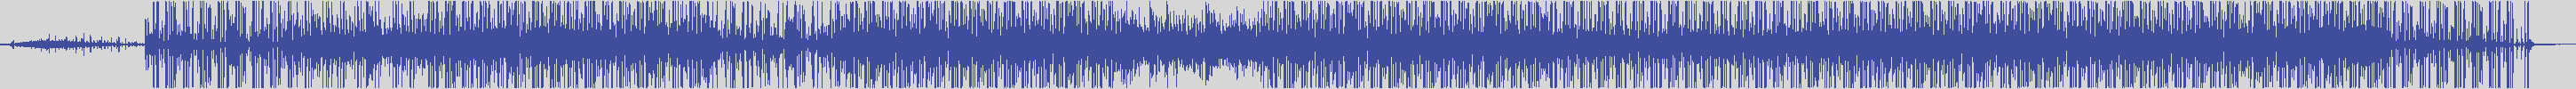 noclouds_chillout [NOC131] T4d2 - Movimento [Original Mix] audio wave form